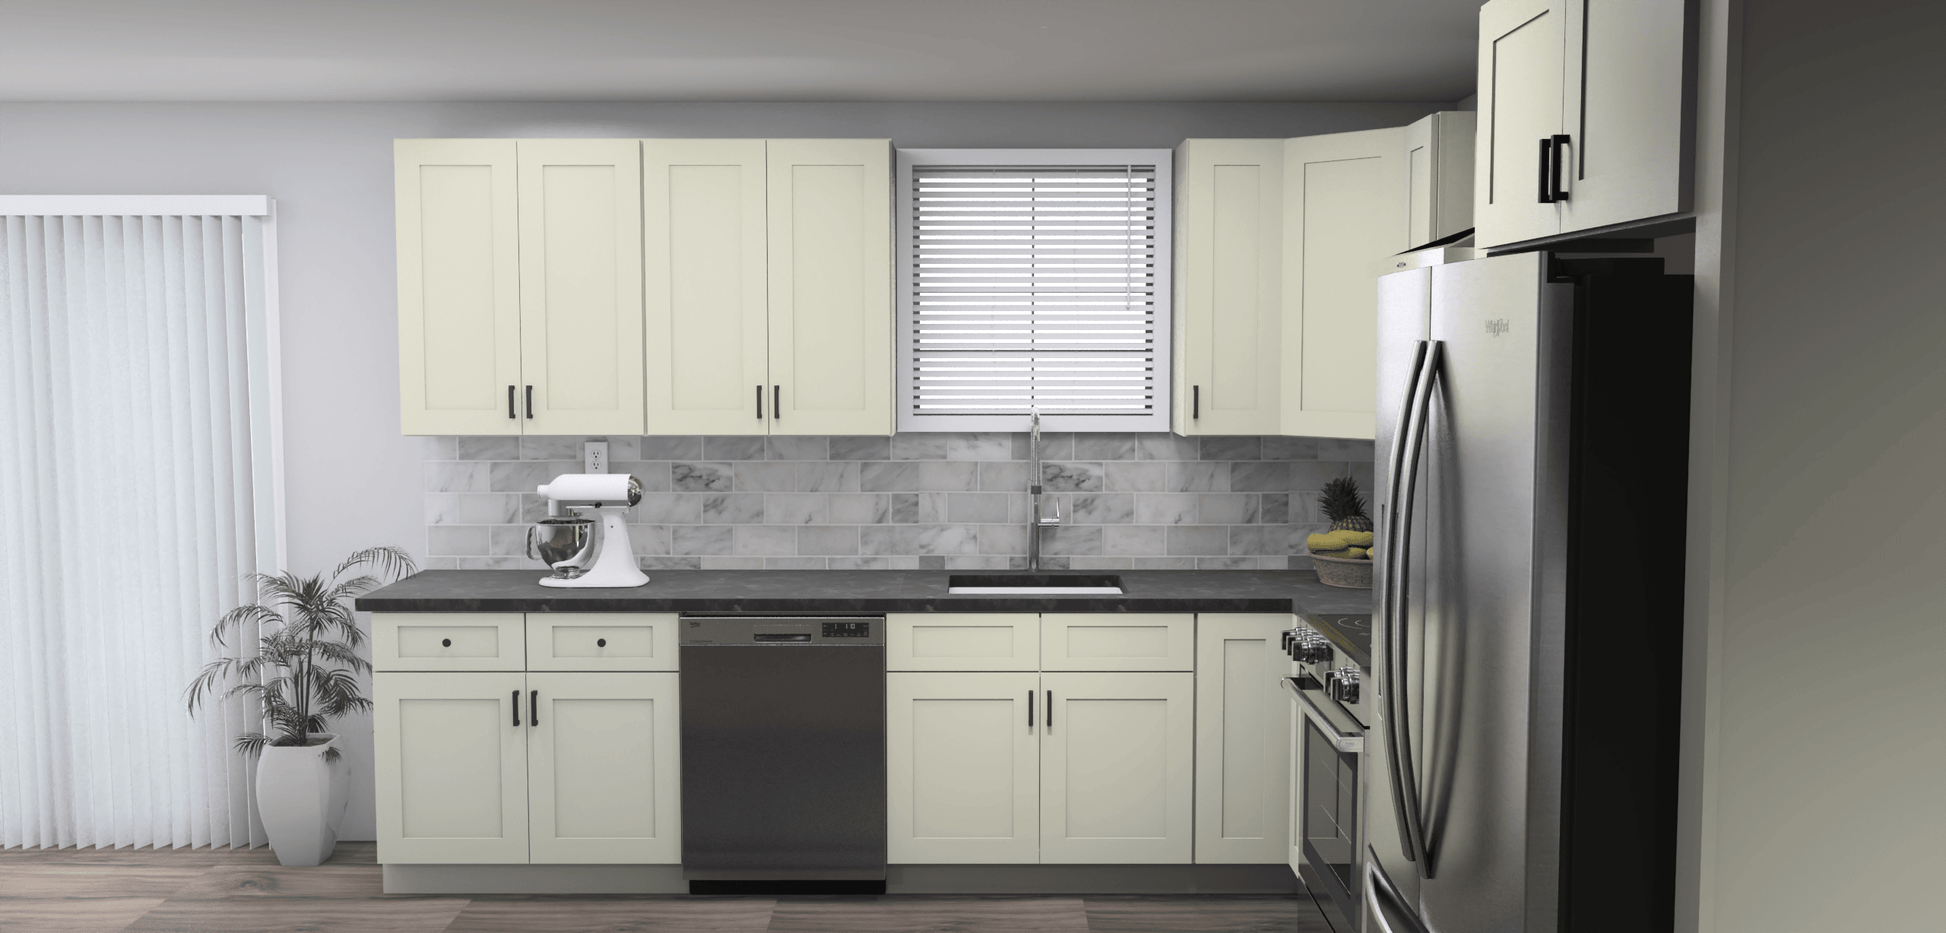 Fabuwood Allure Galaxy Linen 11 x 11 L Shaped Kitchen Side Layout Photo